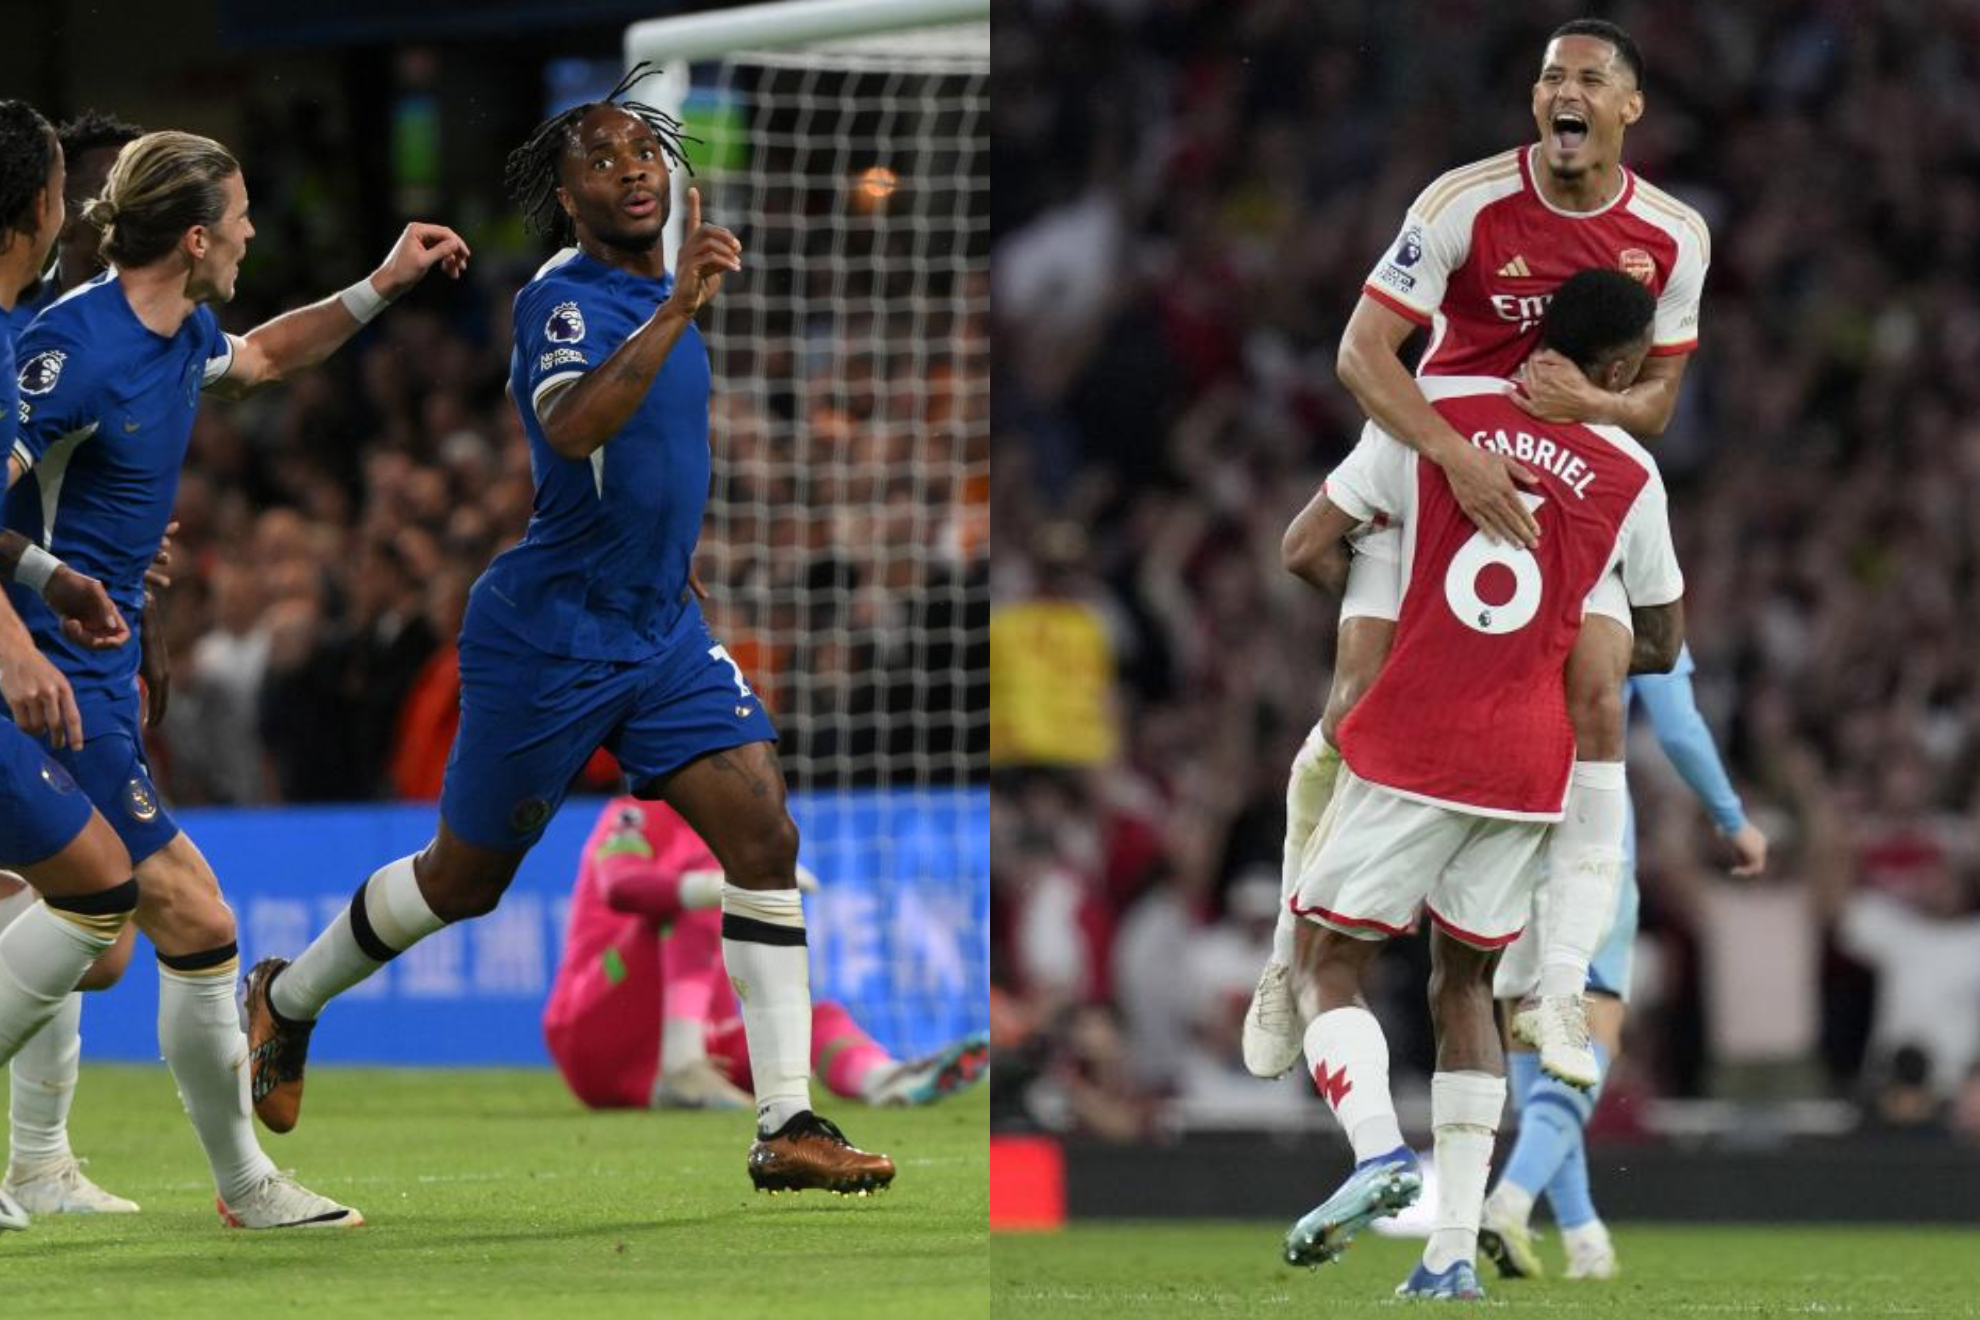 Chelsea - Arsenal: resumen, resultado y goles